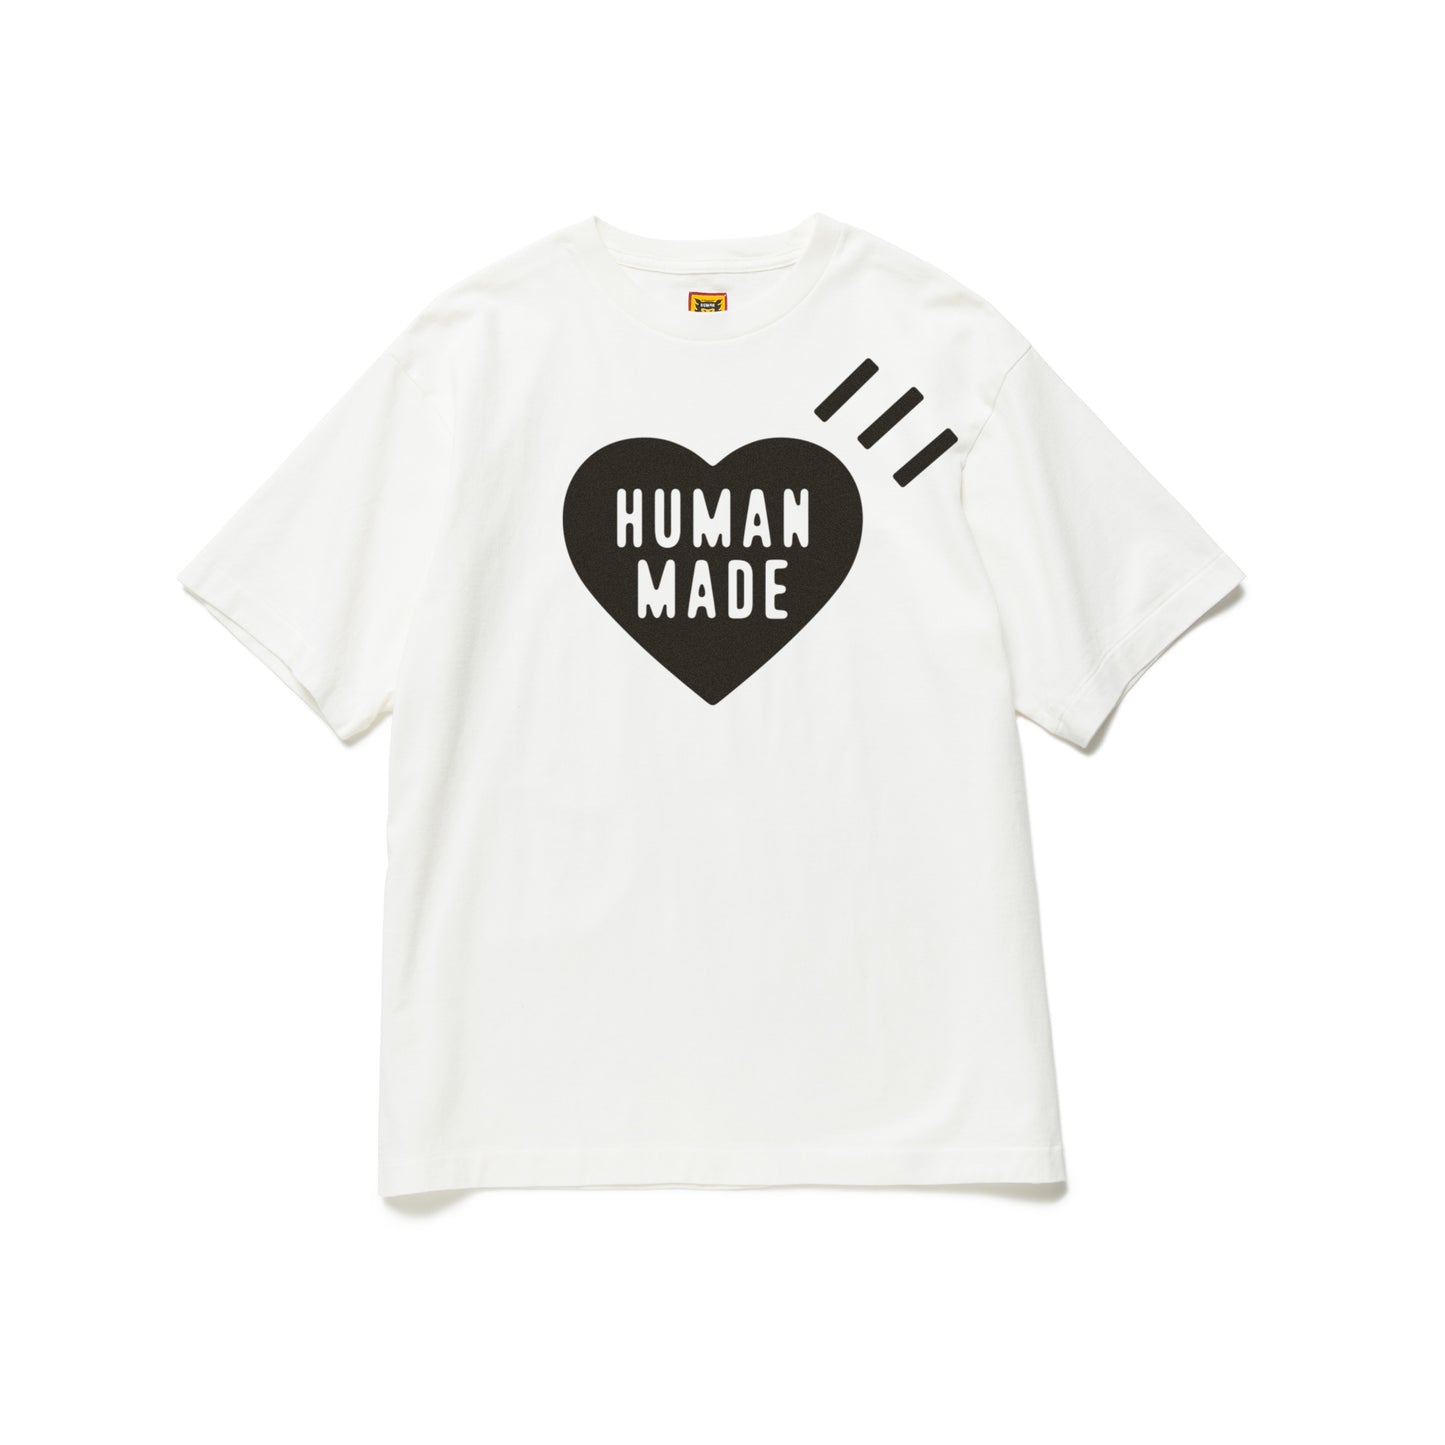 ヒューマンメイド tシャツ human made - Tシャツ